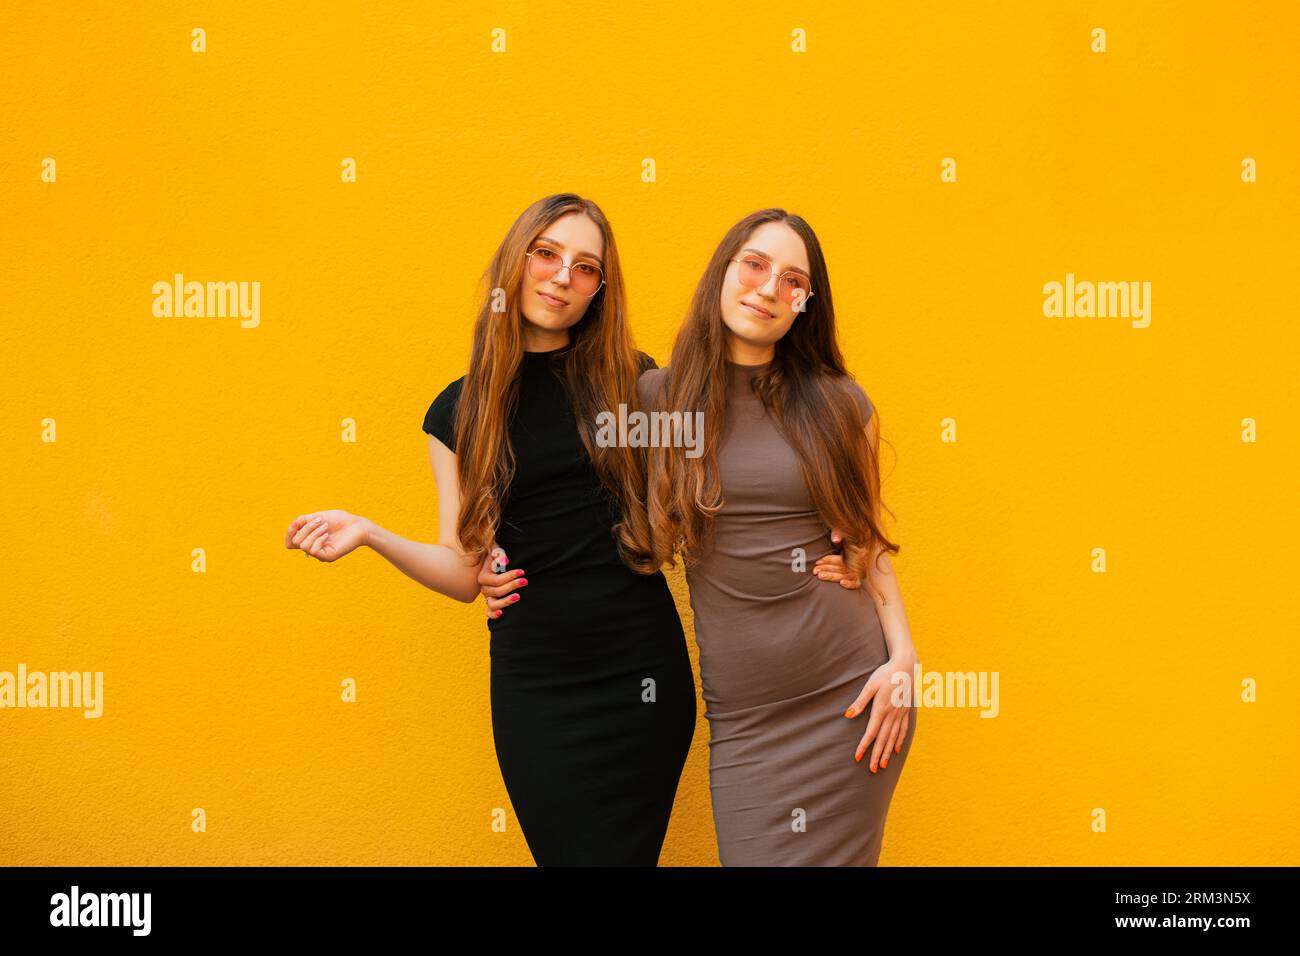 Connexion entre drôle deux jeunes soeurs jumelles génération Z avec des lunettes de soleil fraîches tenant les mains regardant la caméra debout sur fond de mur jaune Banque D'Images